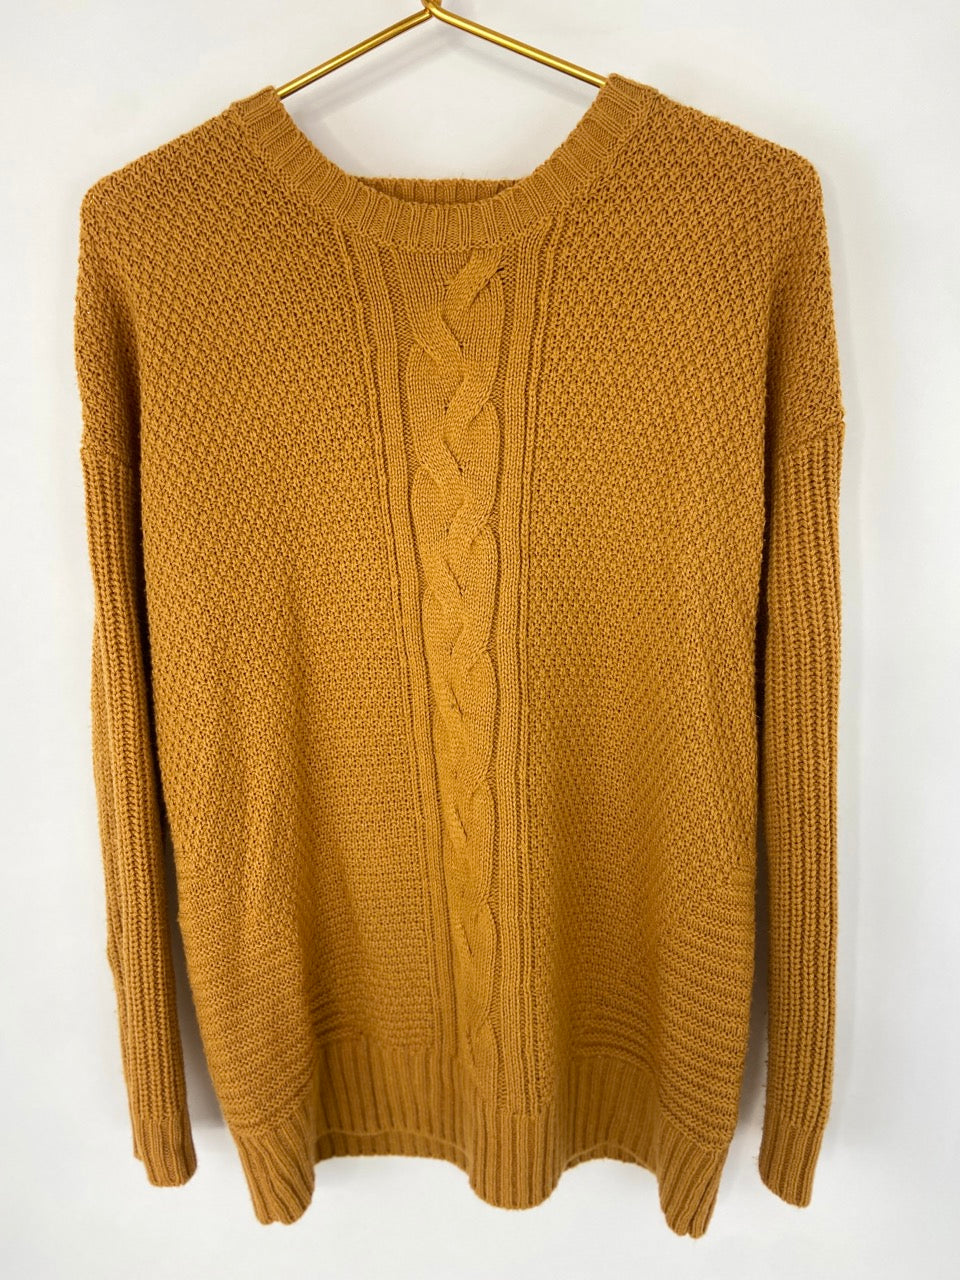 Mustard Knit Sweater- M